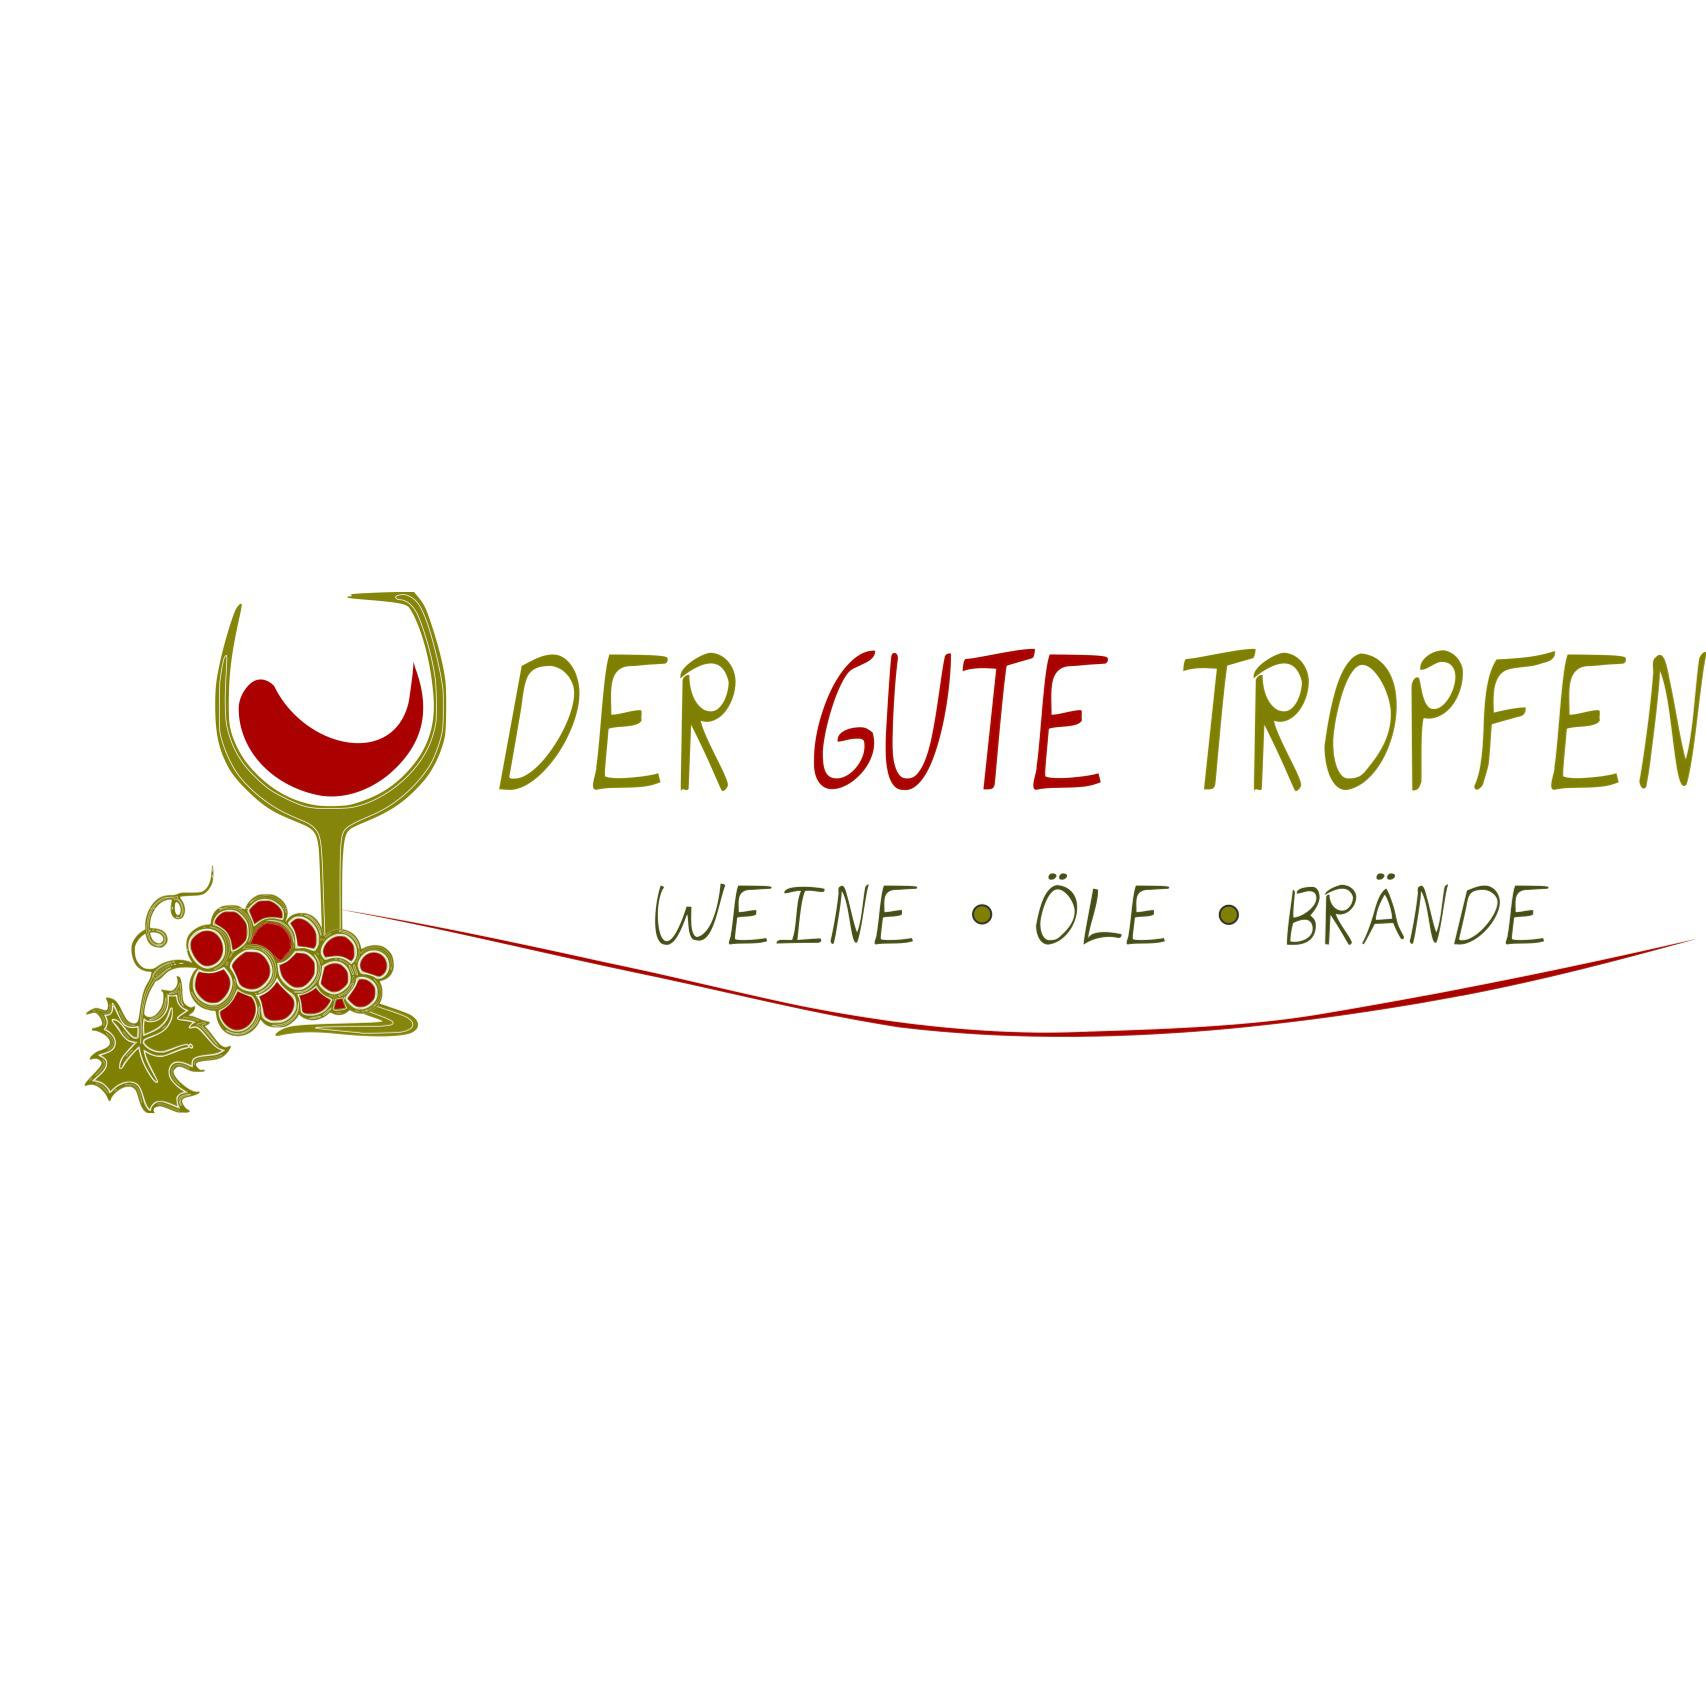 Der Gute Tropfen Chemnitz , Wein Öle Brände in Chemnitz - Logo